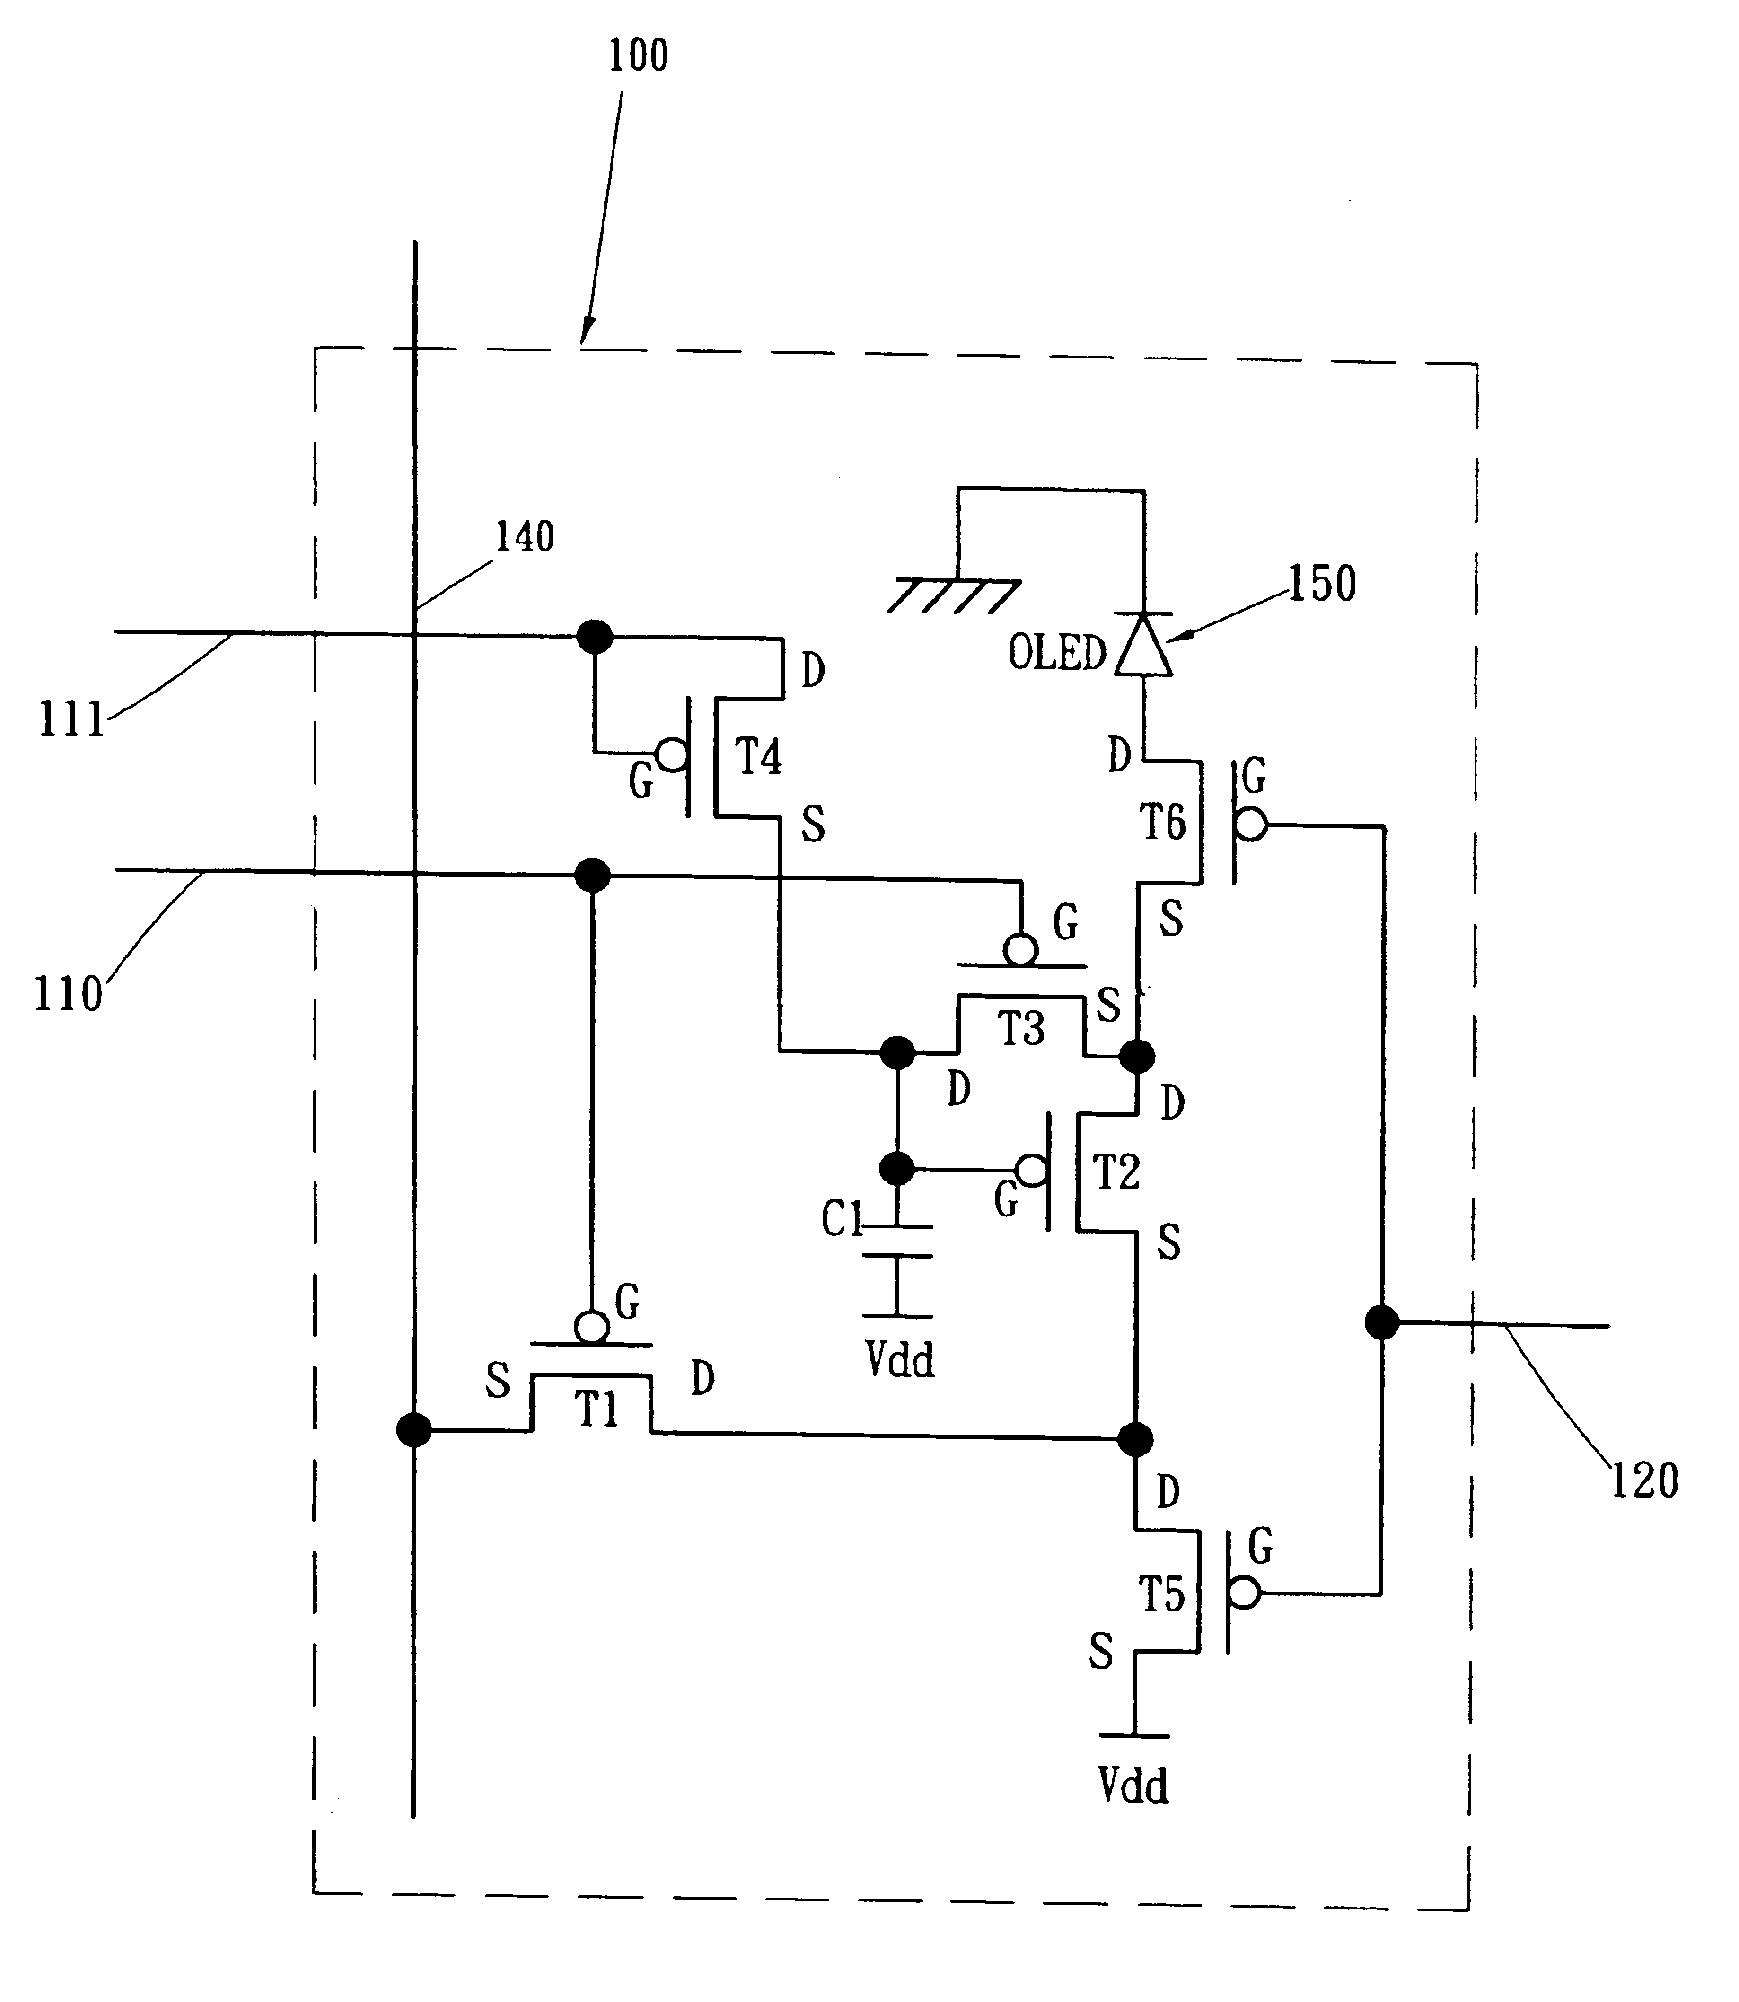 Pixel driving circuit of an organic light emitting diode display panel